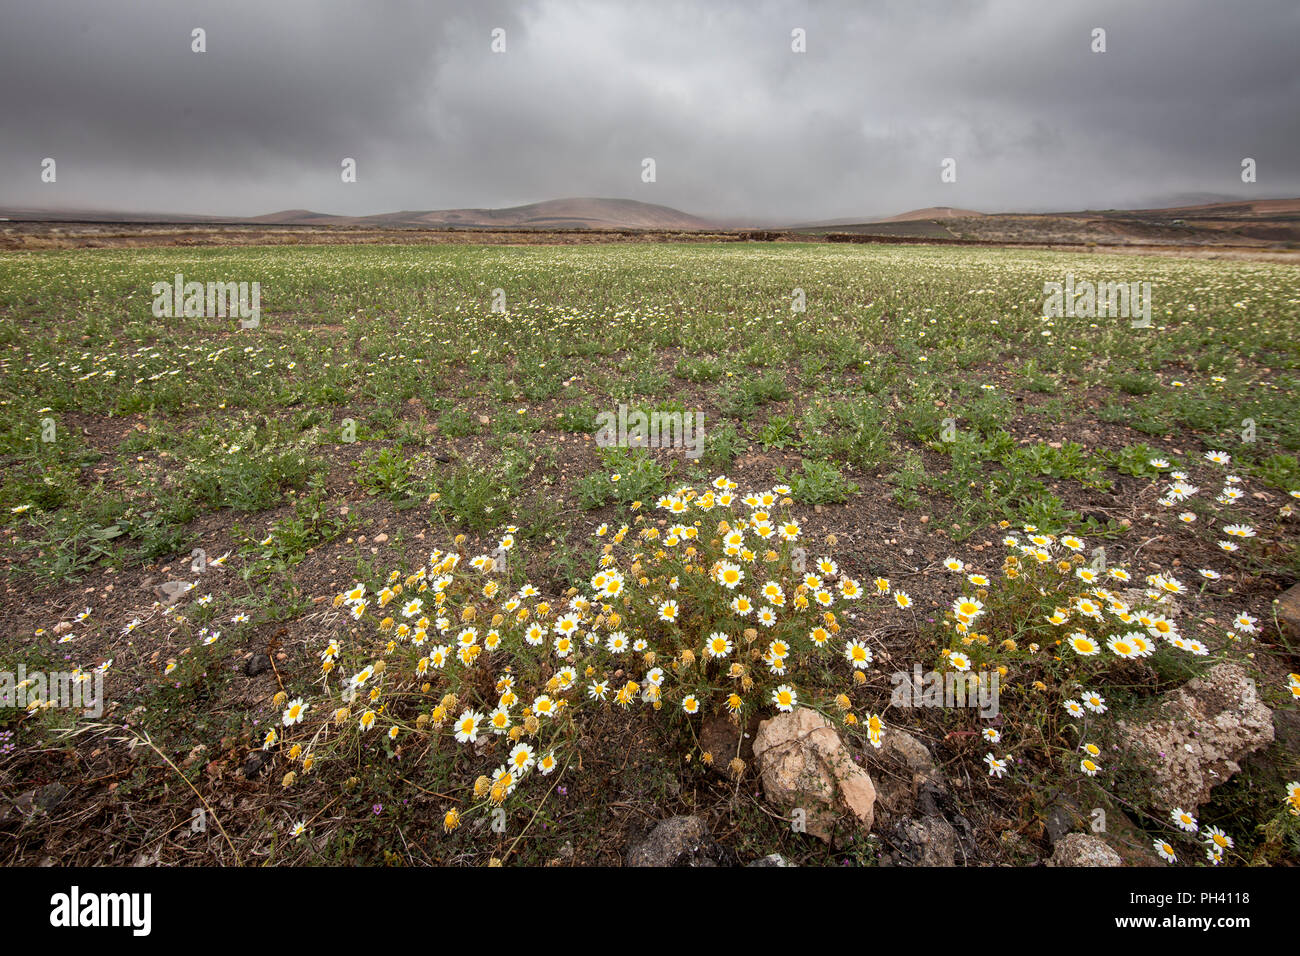 Wild daisy flowers at edge of field, El Mojon, Lanzarote, Canary Islands, Spain Stock Photo